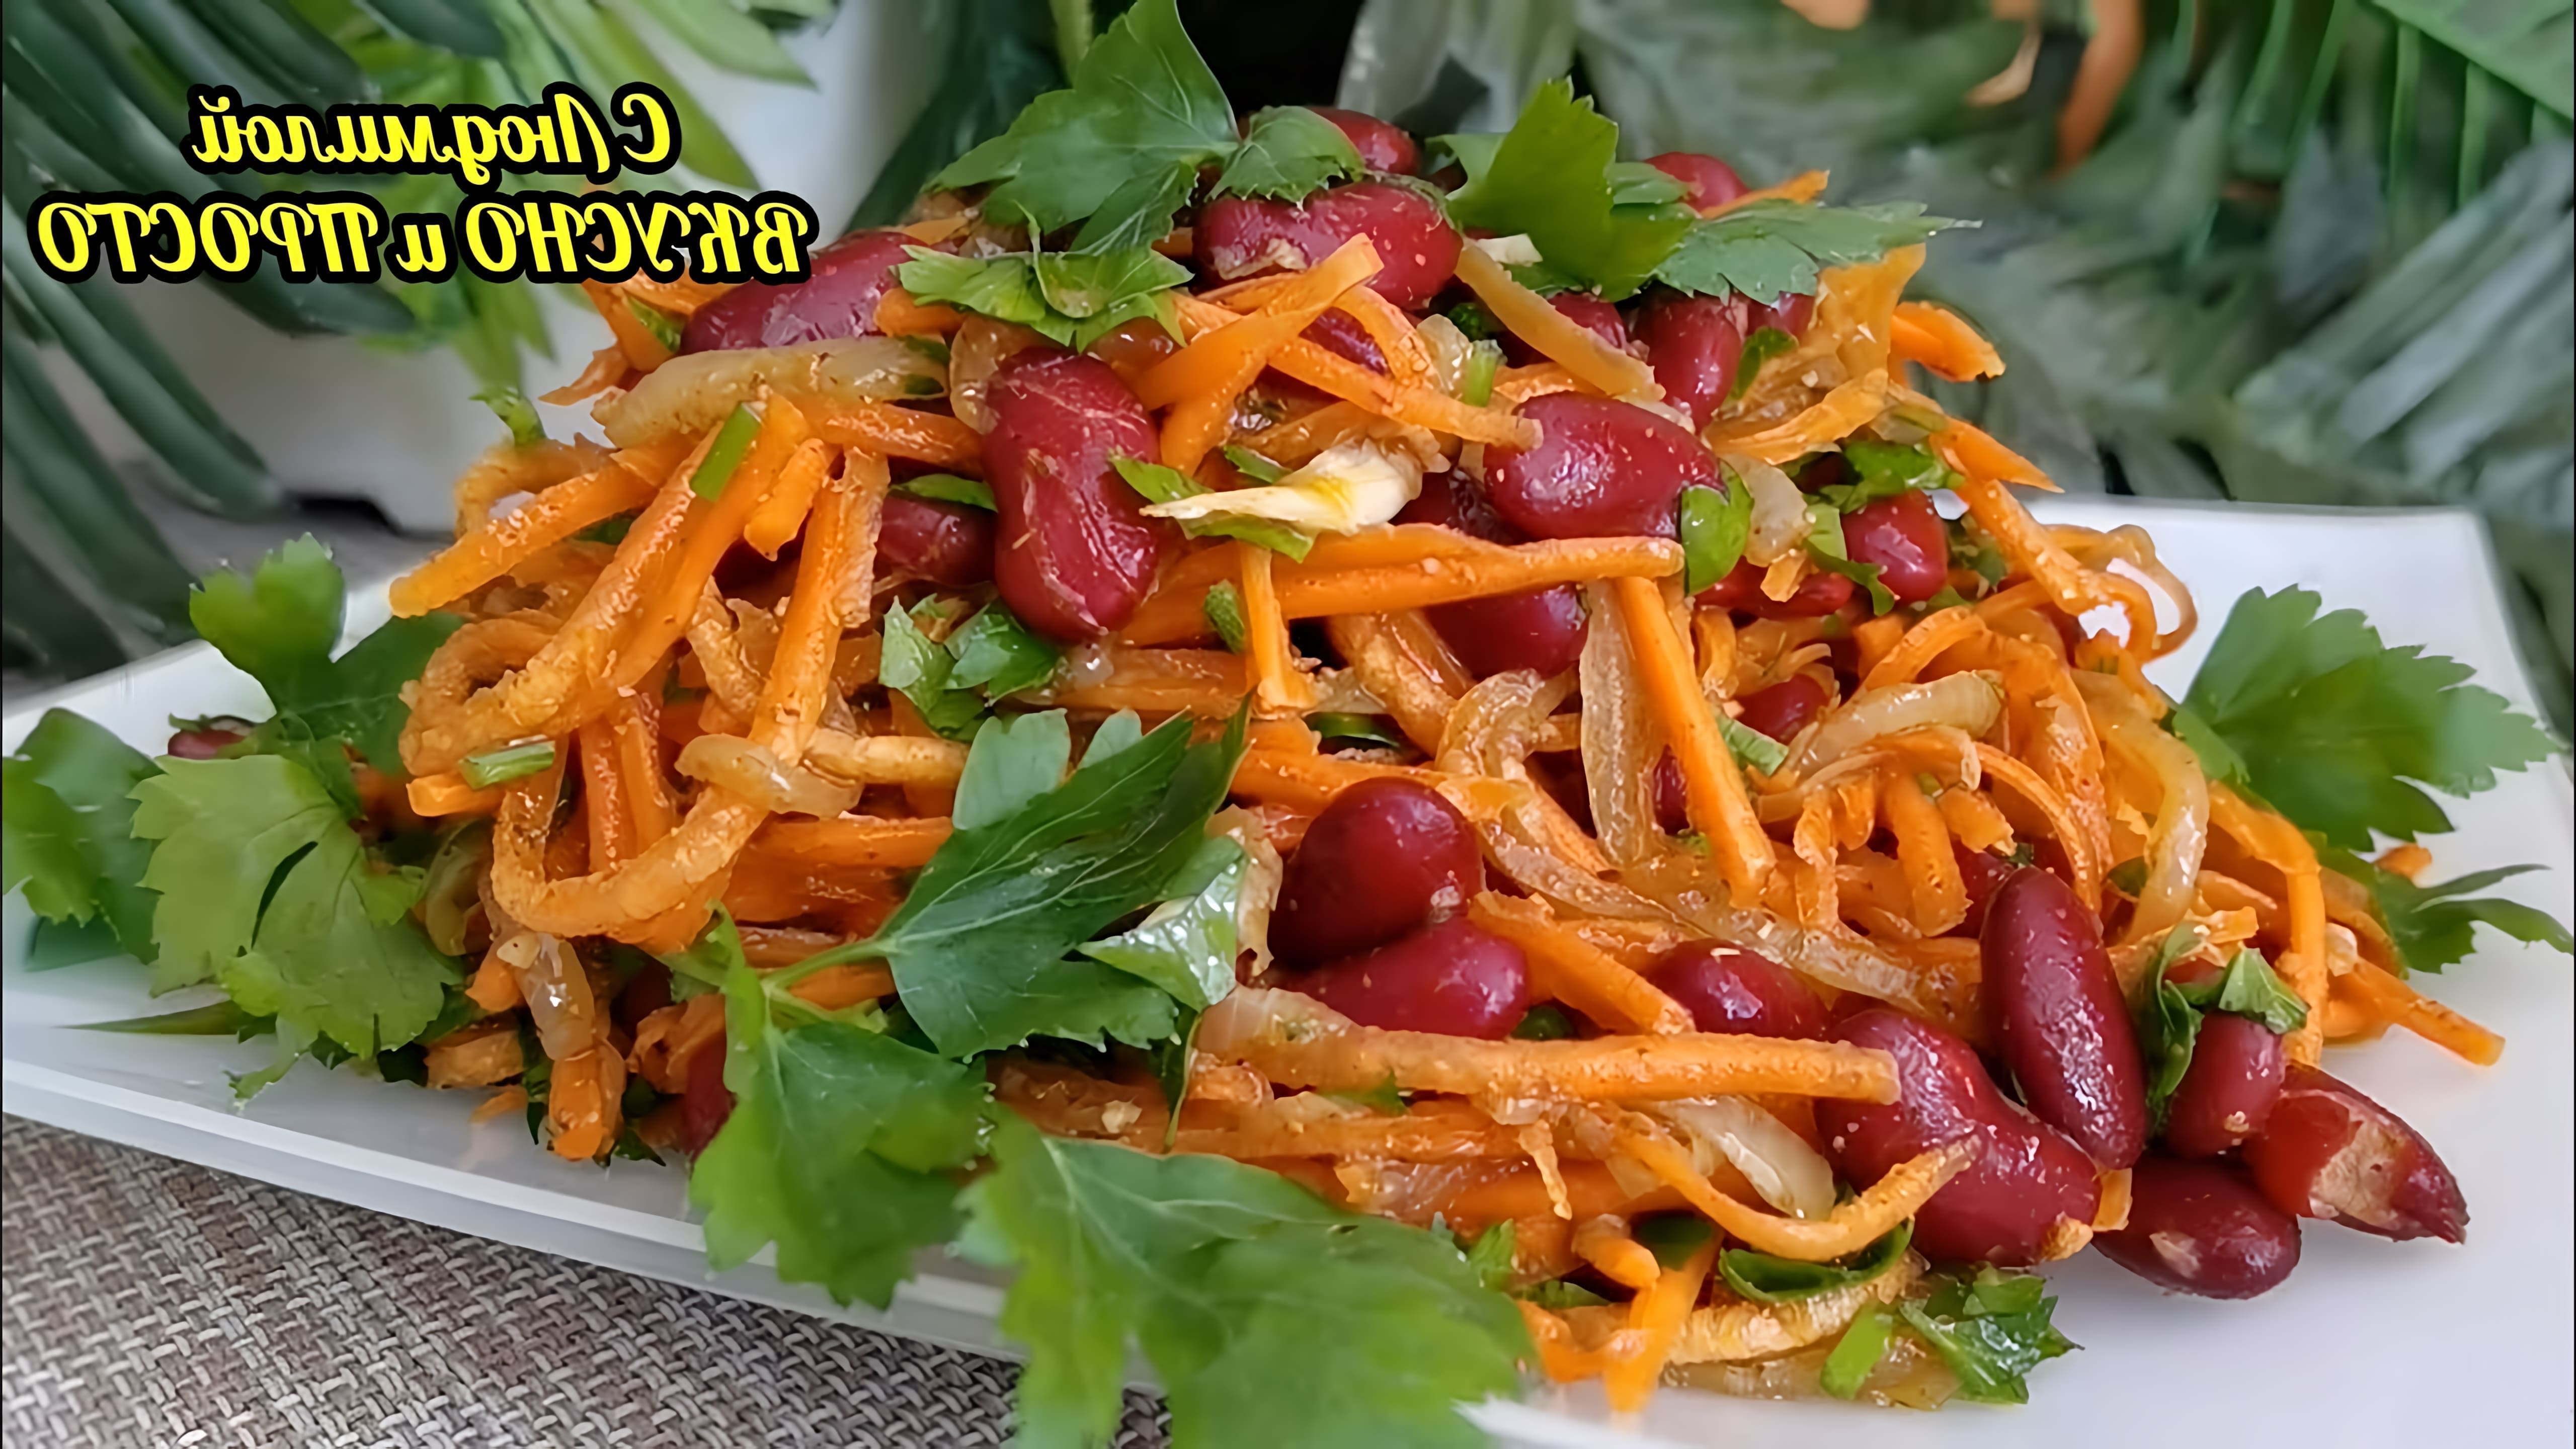 В этом видео демонстрируется рецепт салата из фасоли и моркови, который готовится всего за 10 минут